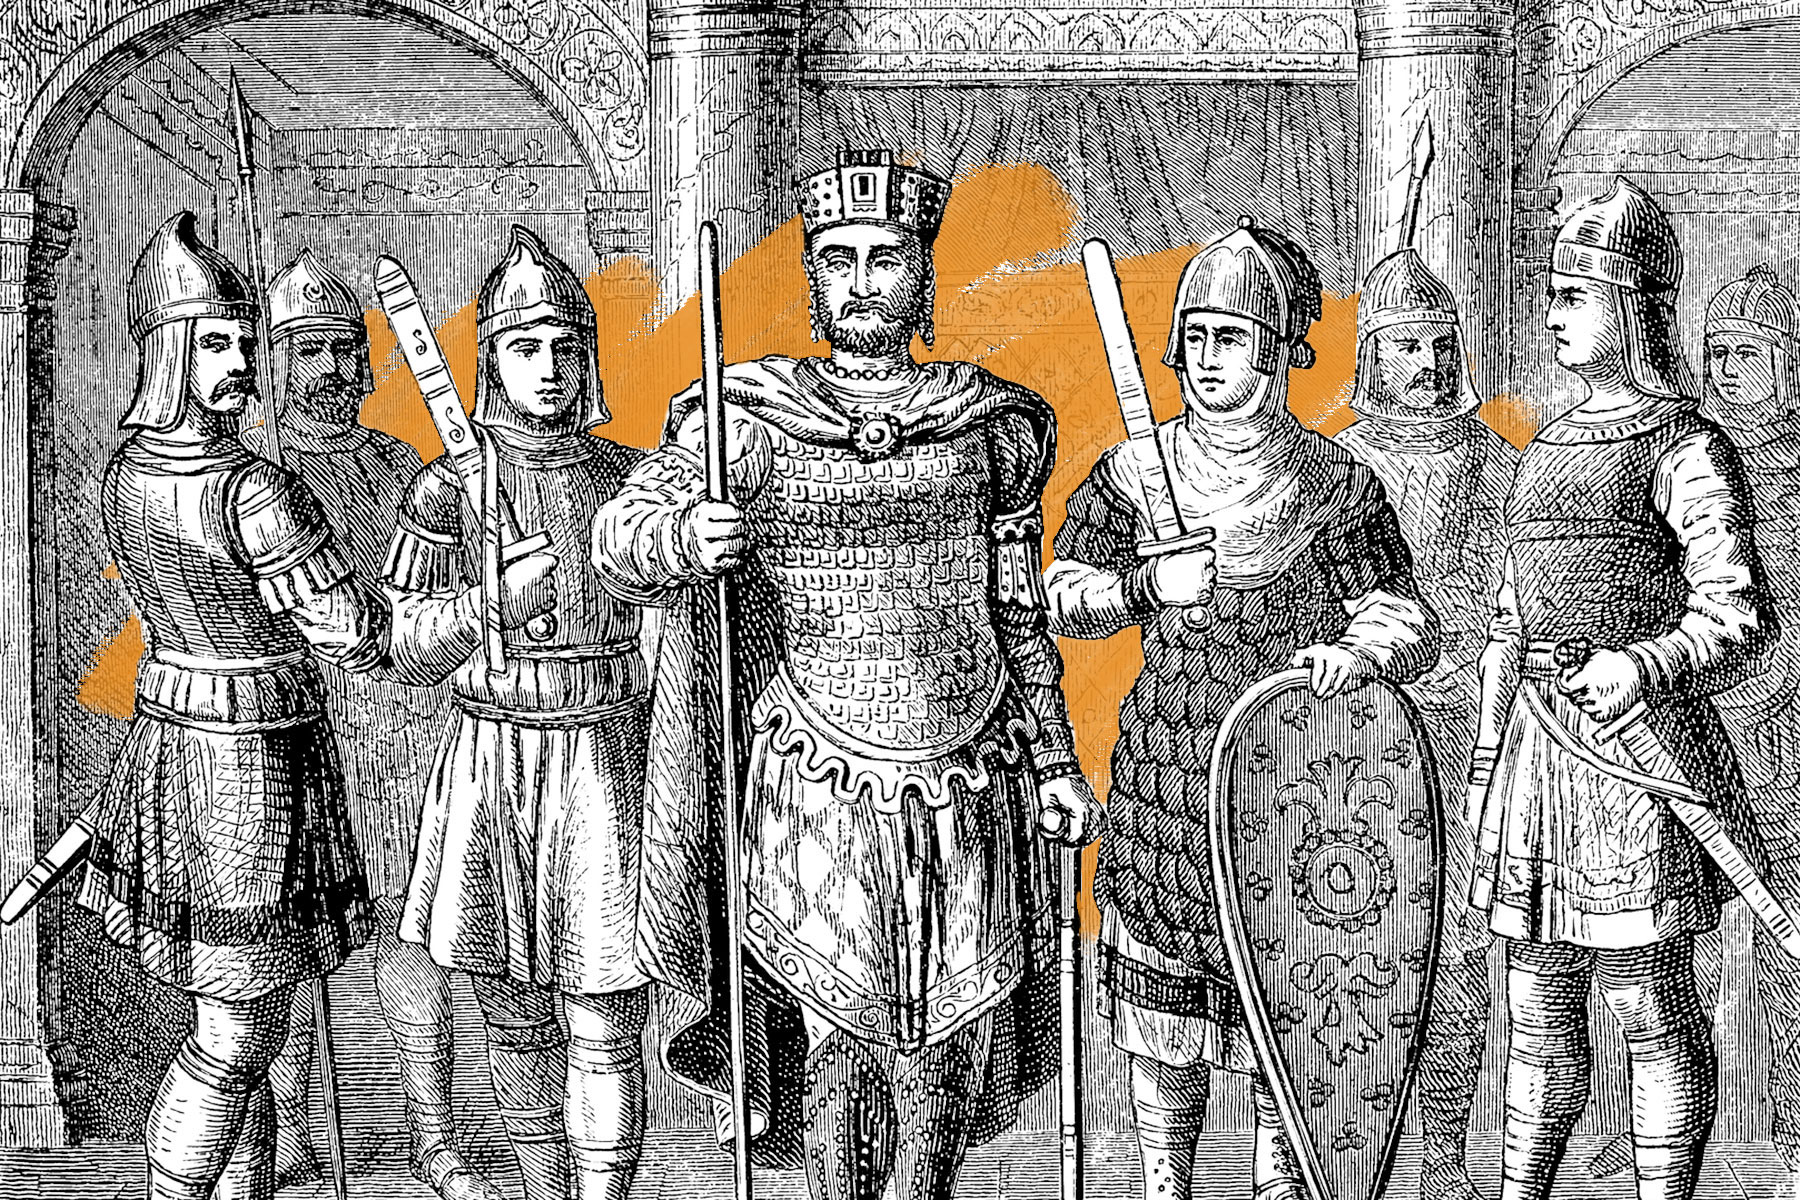 Byzantine emperor troops